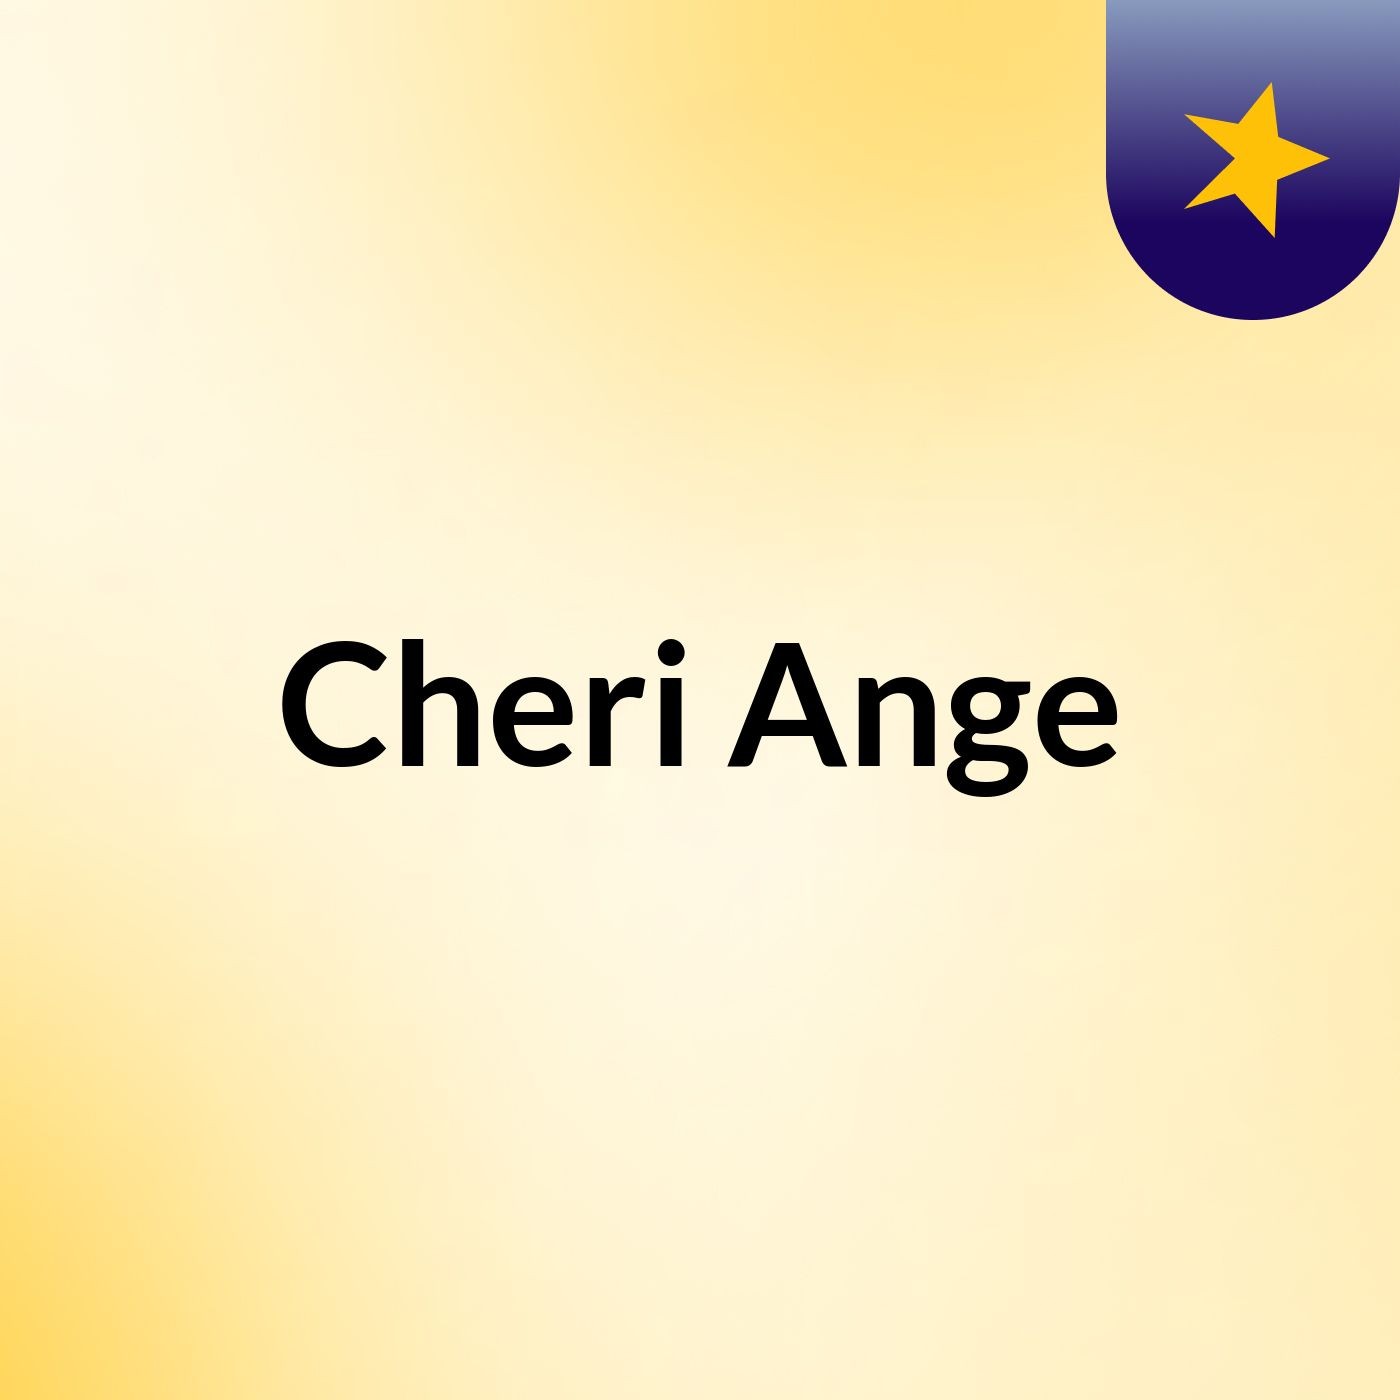 Cheri Ange